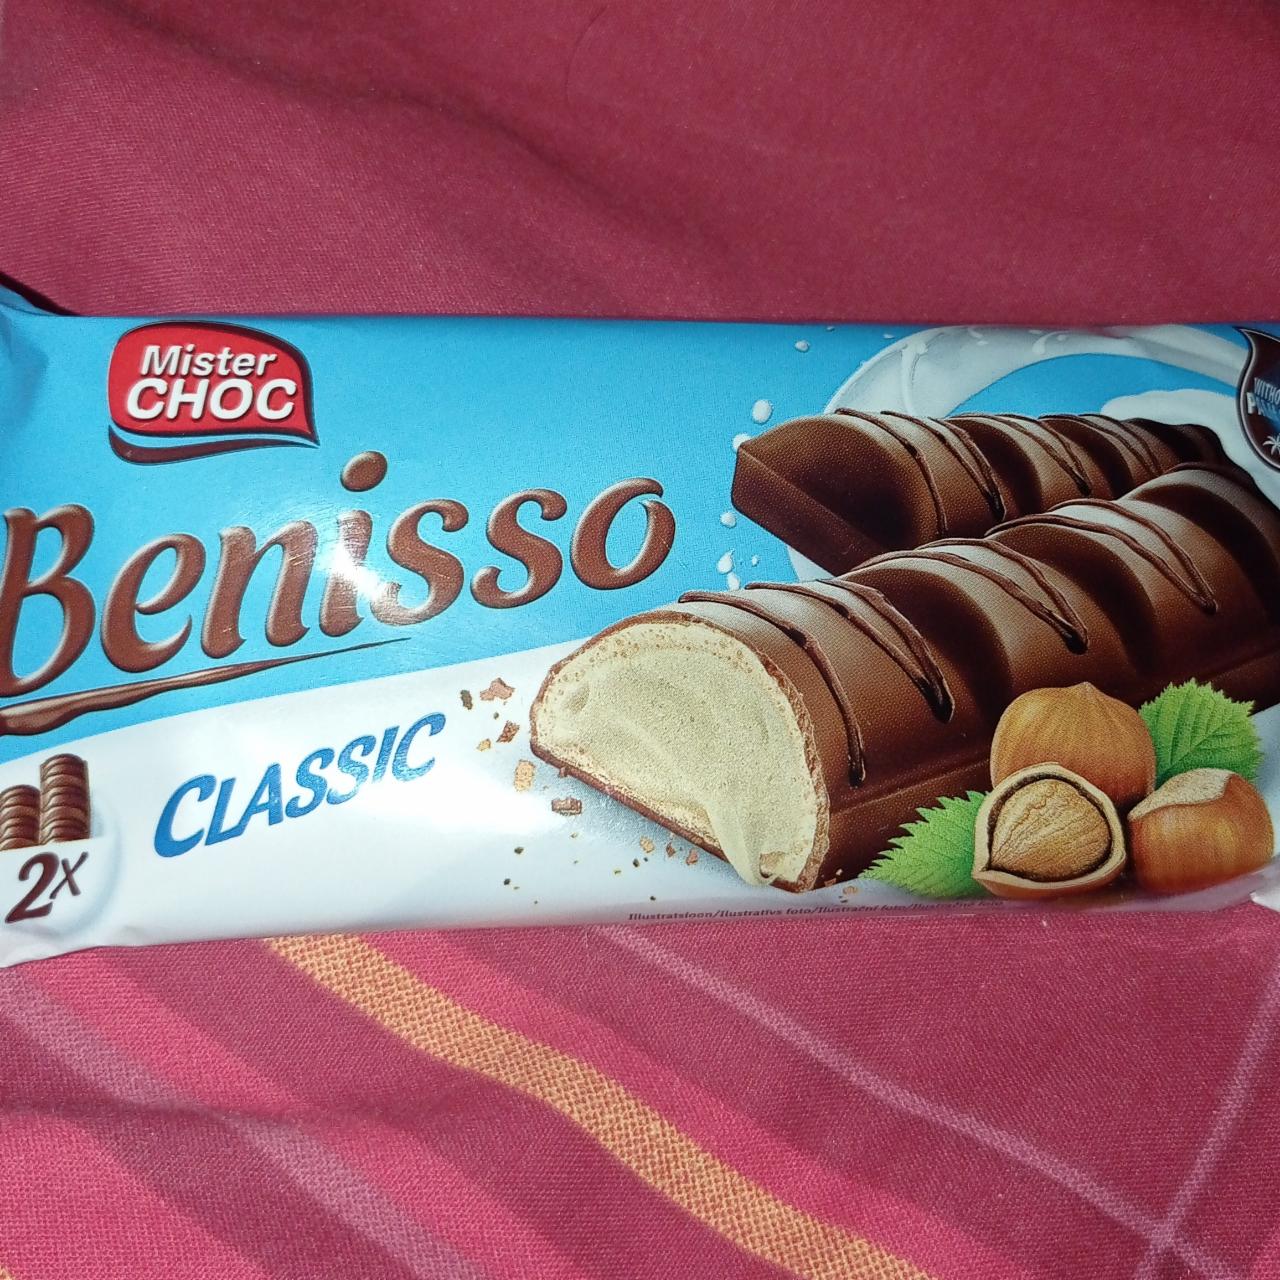 Фото - вафельные палочки с ореховой начинкой в глазури Benisso CLASSIC Mister Choc